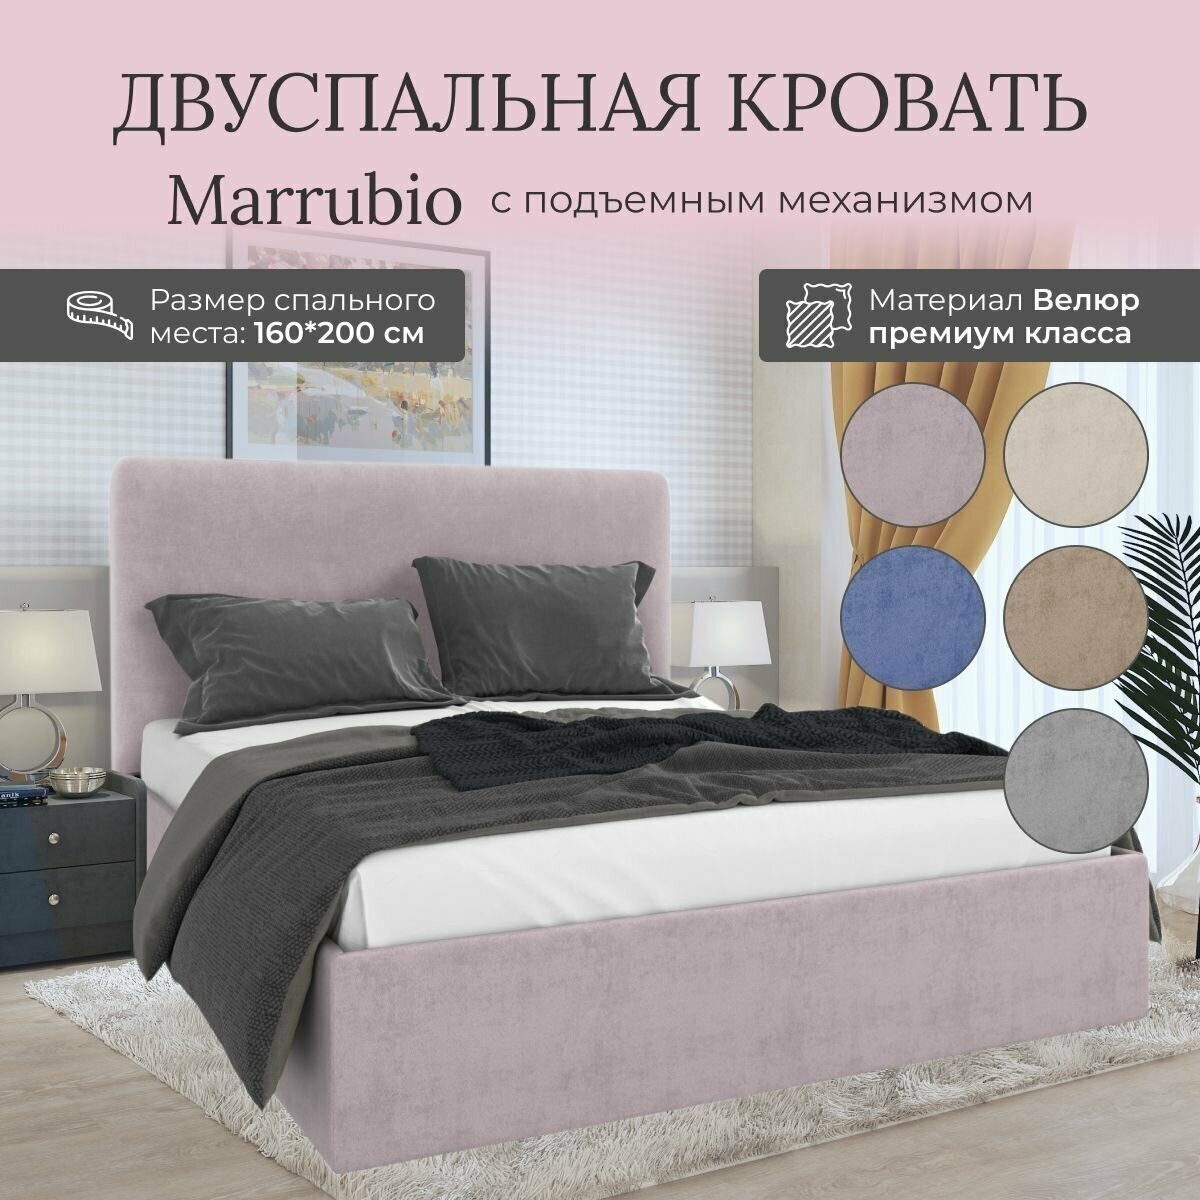 Кровать с подъемным механизмом Luxson Marrubio двуспальная размер 160х200